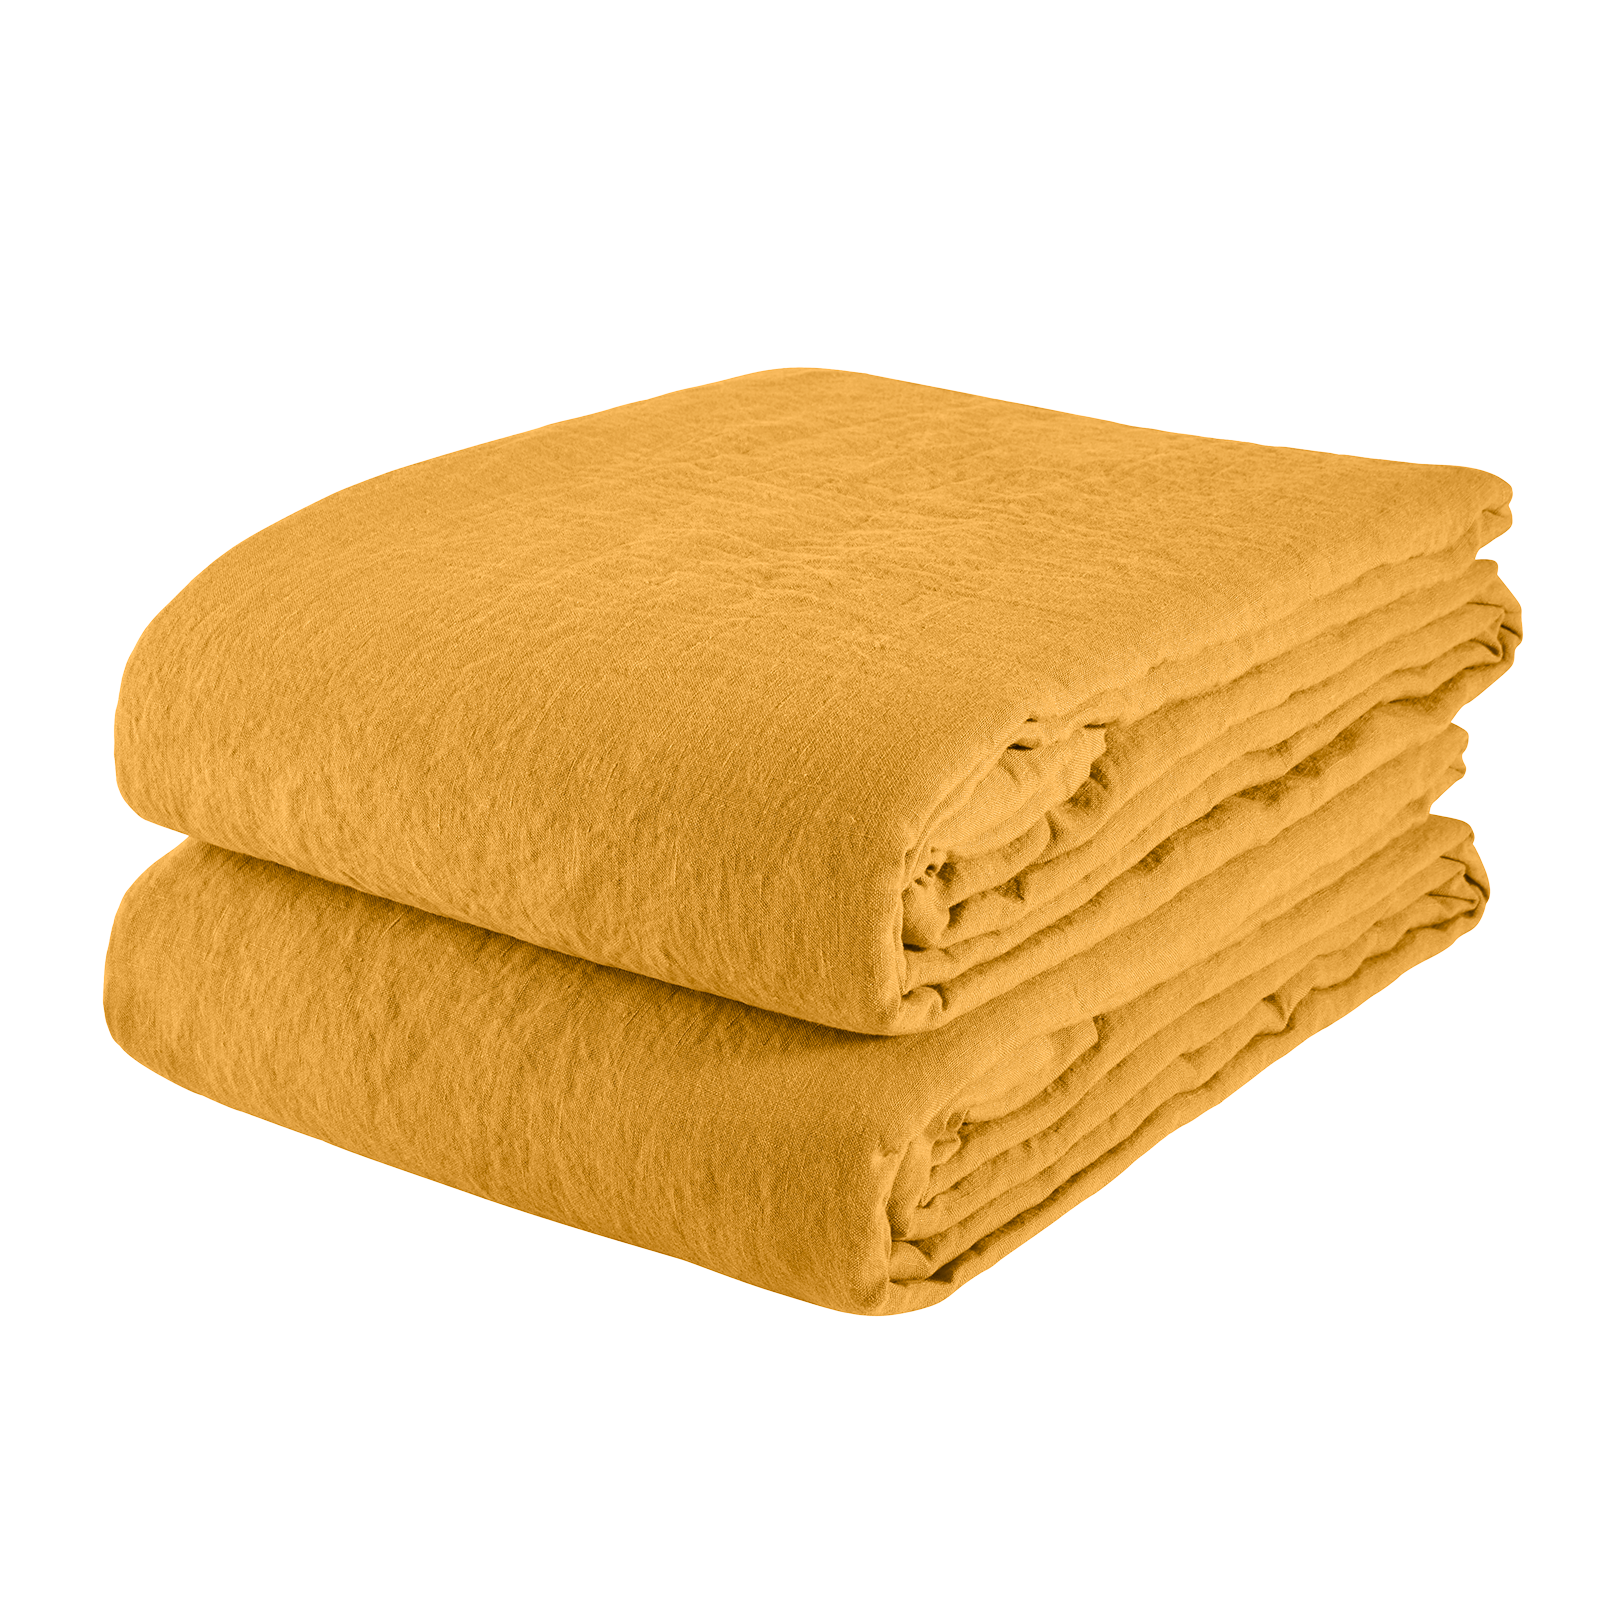 Duvet Cover Linen - Honey